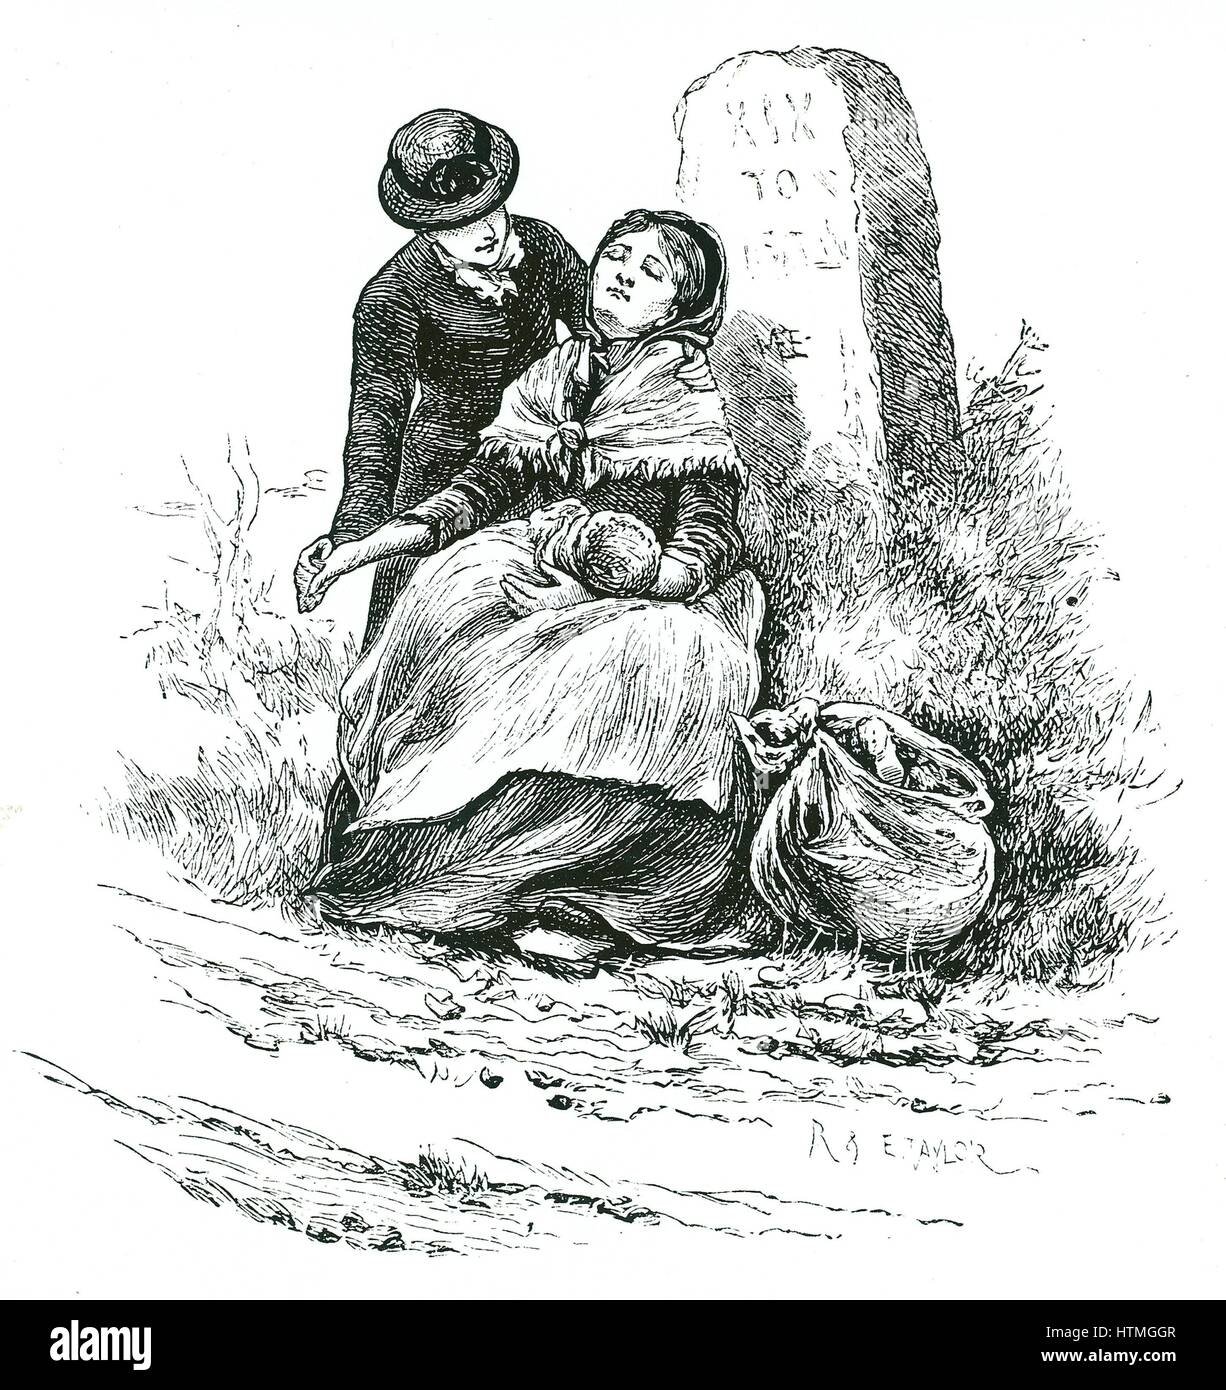 Eine mittellose, unverheiratete Mutter fand erschöpft auf dem Weg zu dem Arbeitshaus mit ihrem Baby. Die Szene erinnert an einen Thomas Hardy Roman aber nicht ungewöhnlich, dass in ländlichen Gebieten im ganzen Land. Illustration von Mary Ellen Edwards c1881. Stockfoto